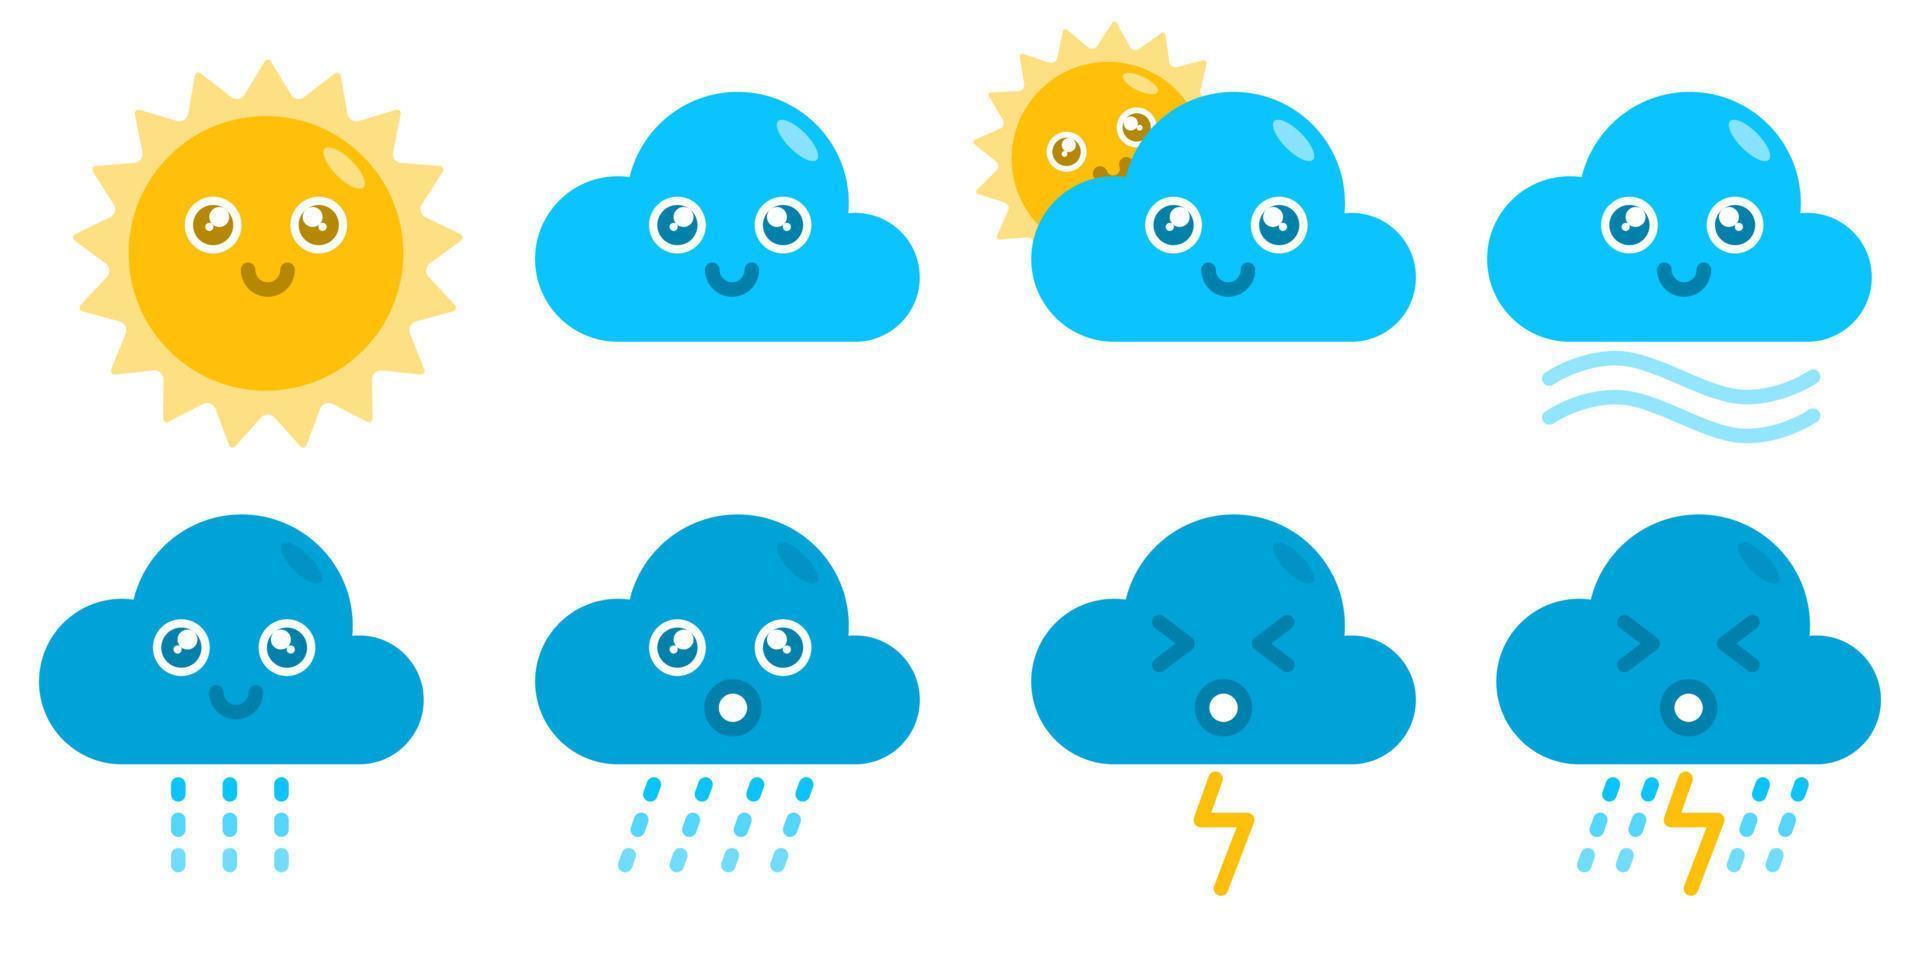 clima sol nube viento lluvia trueno lindo kawaii dibujos animados vector concepto. estilo de ilustración plana para póster, web, mascota, pegatina, logotipo e icono.